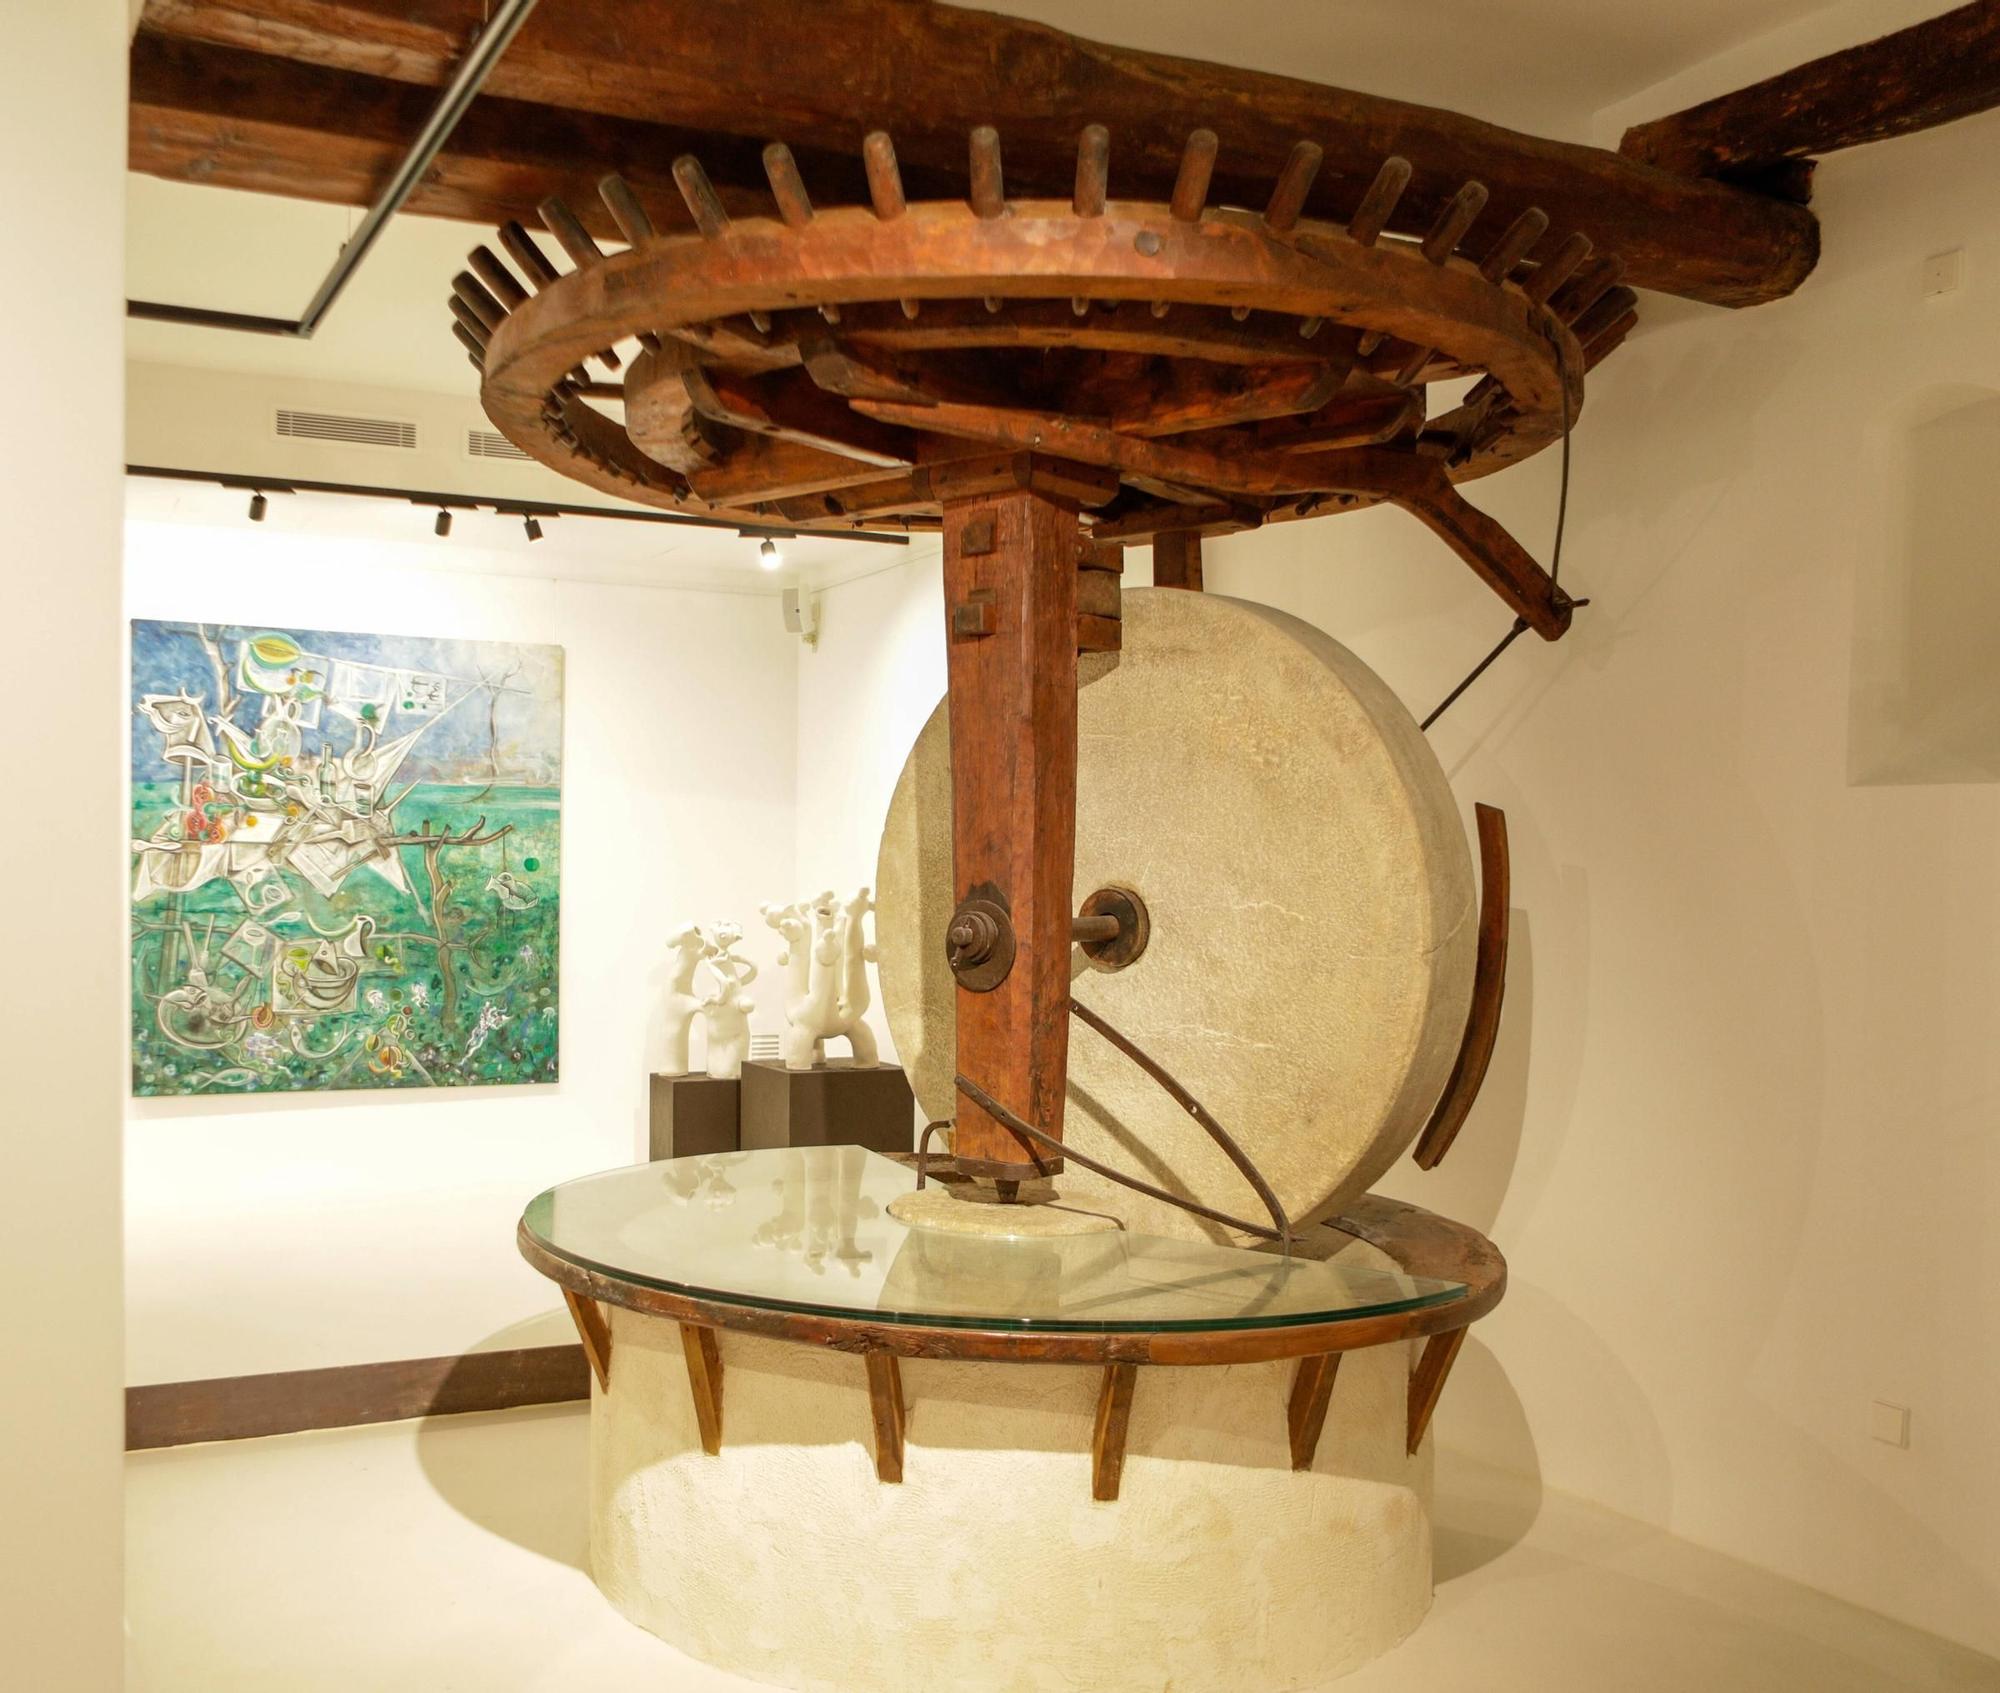 Can Boni une arte y patrimonio en la antigua galería Ferran Cano